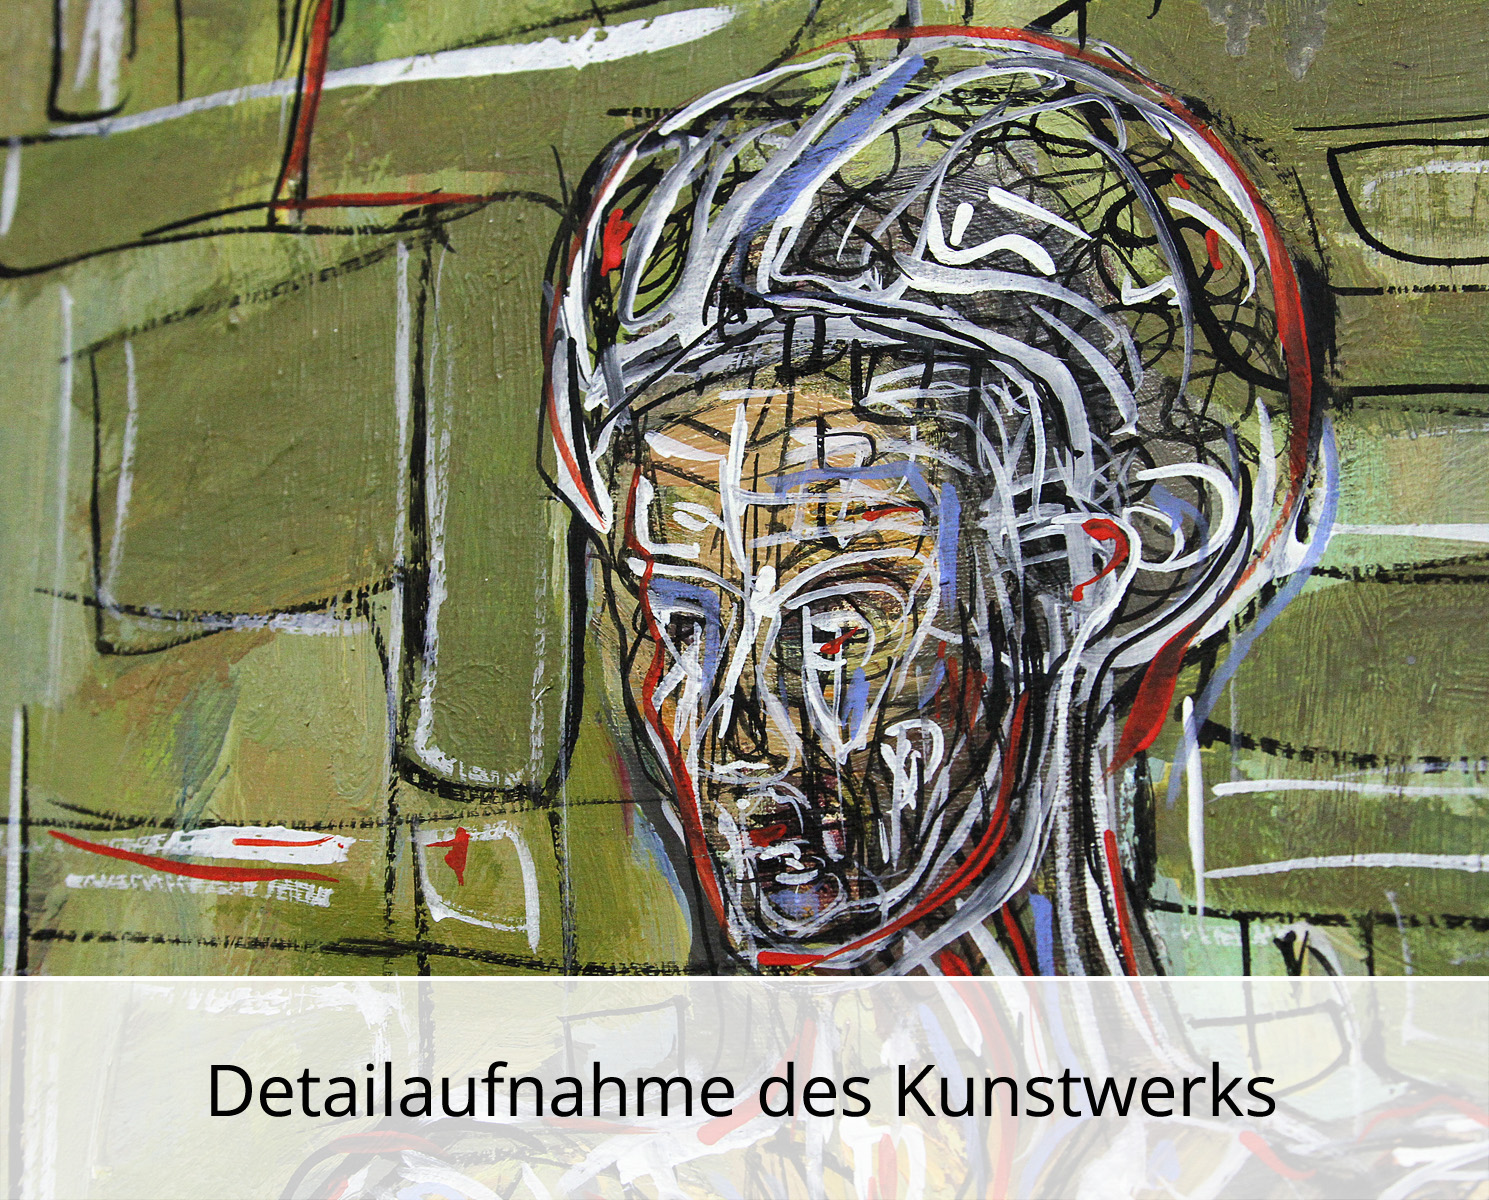 C. Blechschmidt: "Das Model", Original/Unikat, zeitgenössisches Ölgemälde